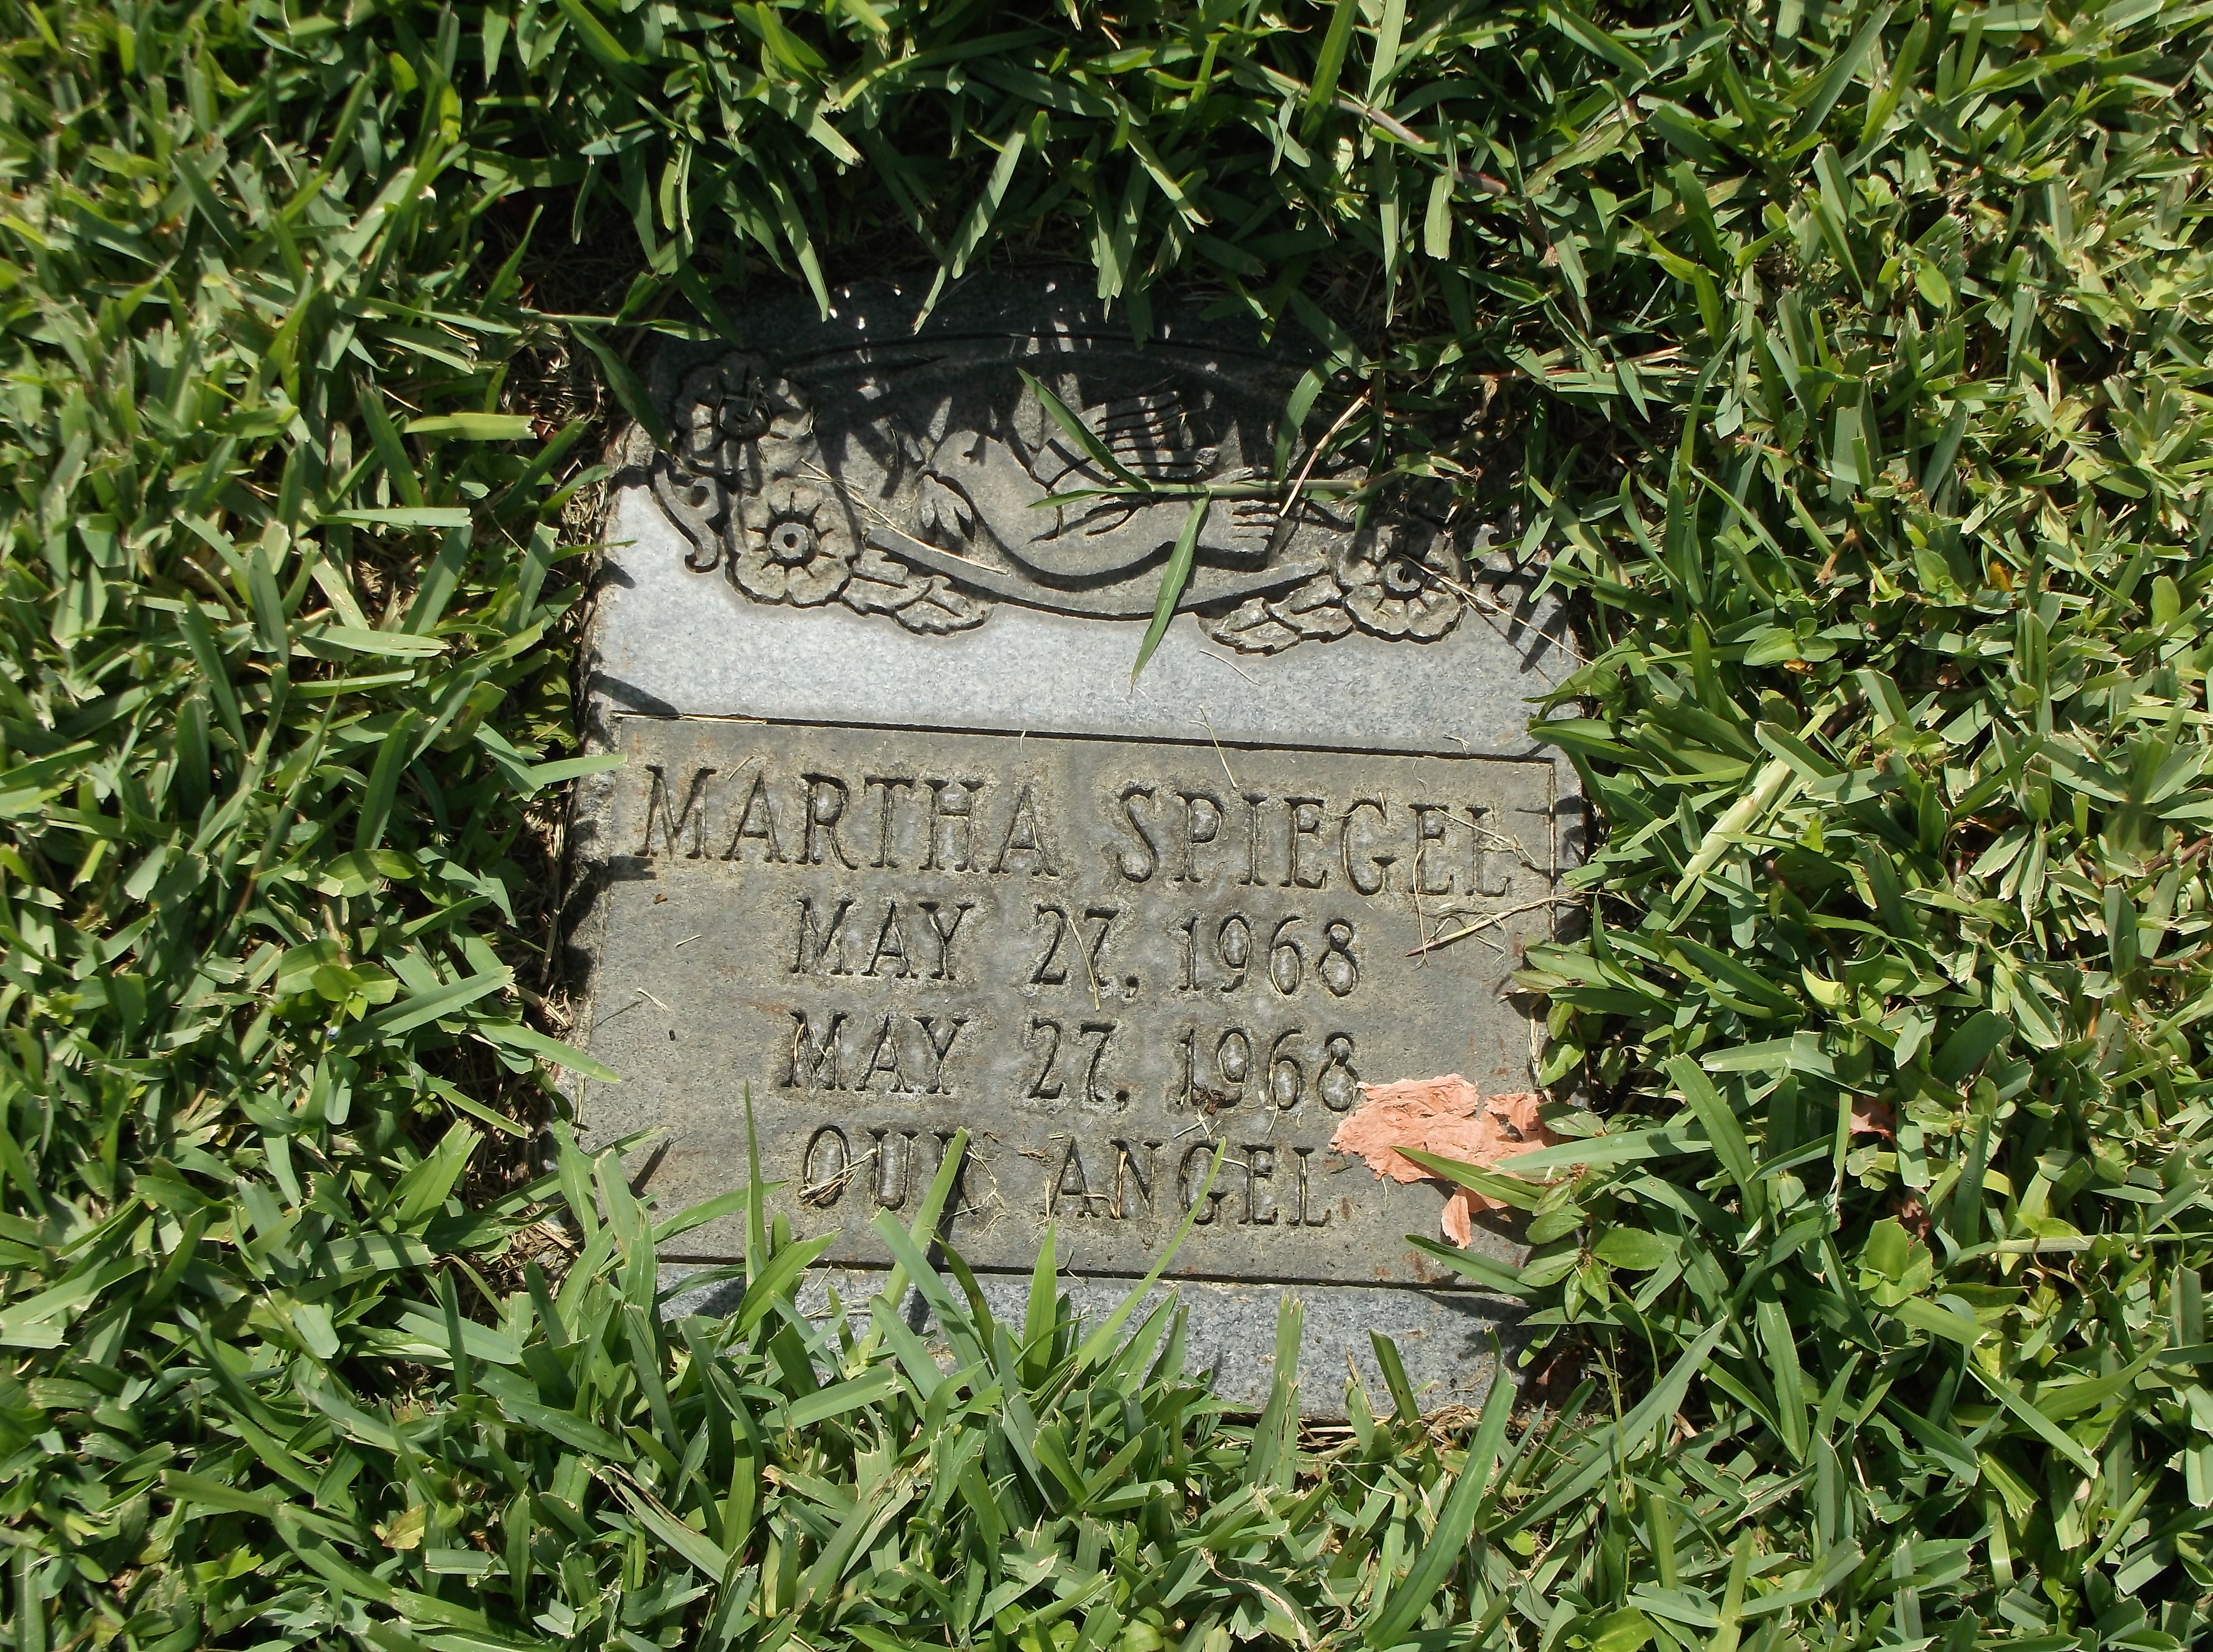 Martha Spiegel